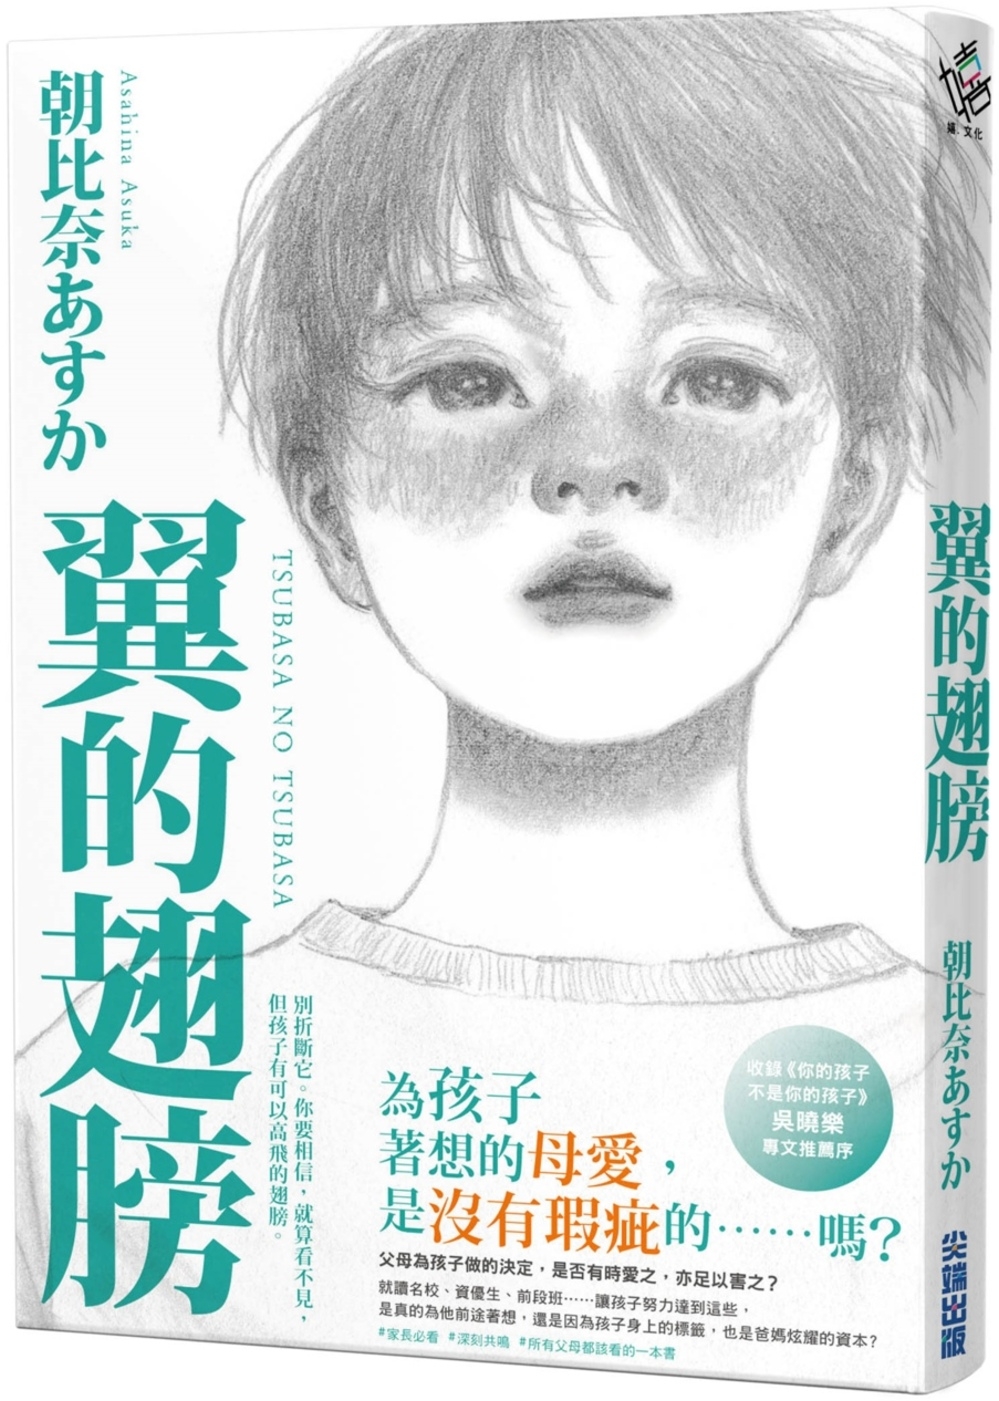 翼的翅膀【家長必看!日本亞馬遜網站持續暢銷第一名，家長瘋傳最有共鳴之書!】